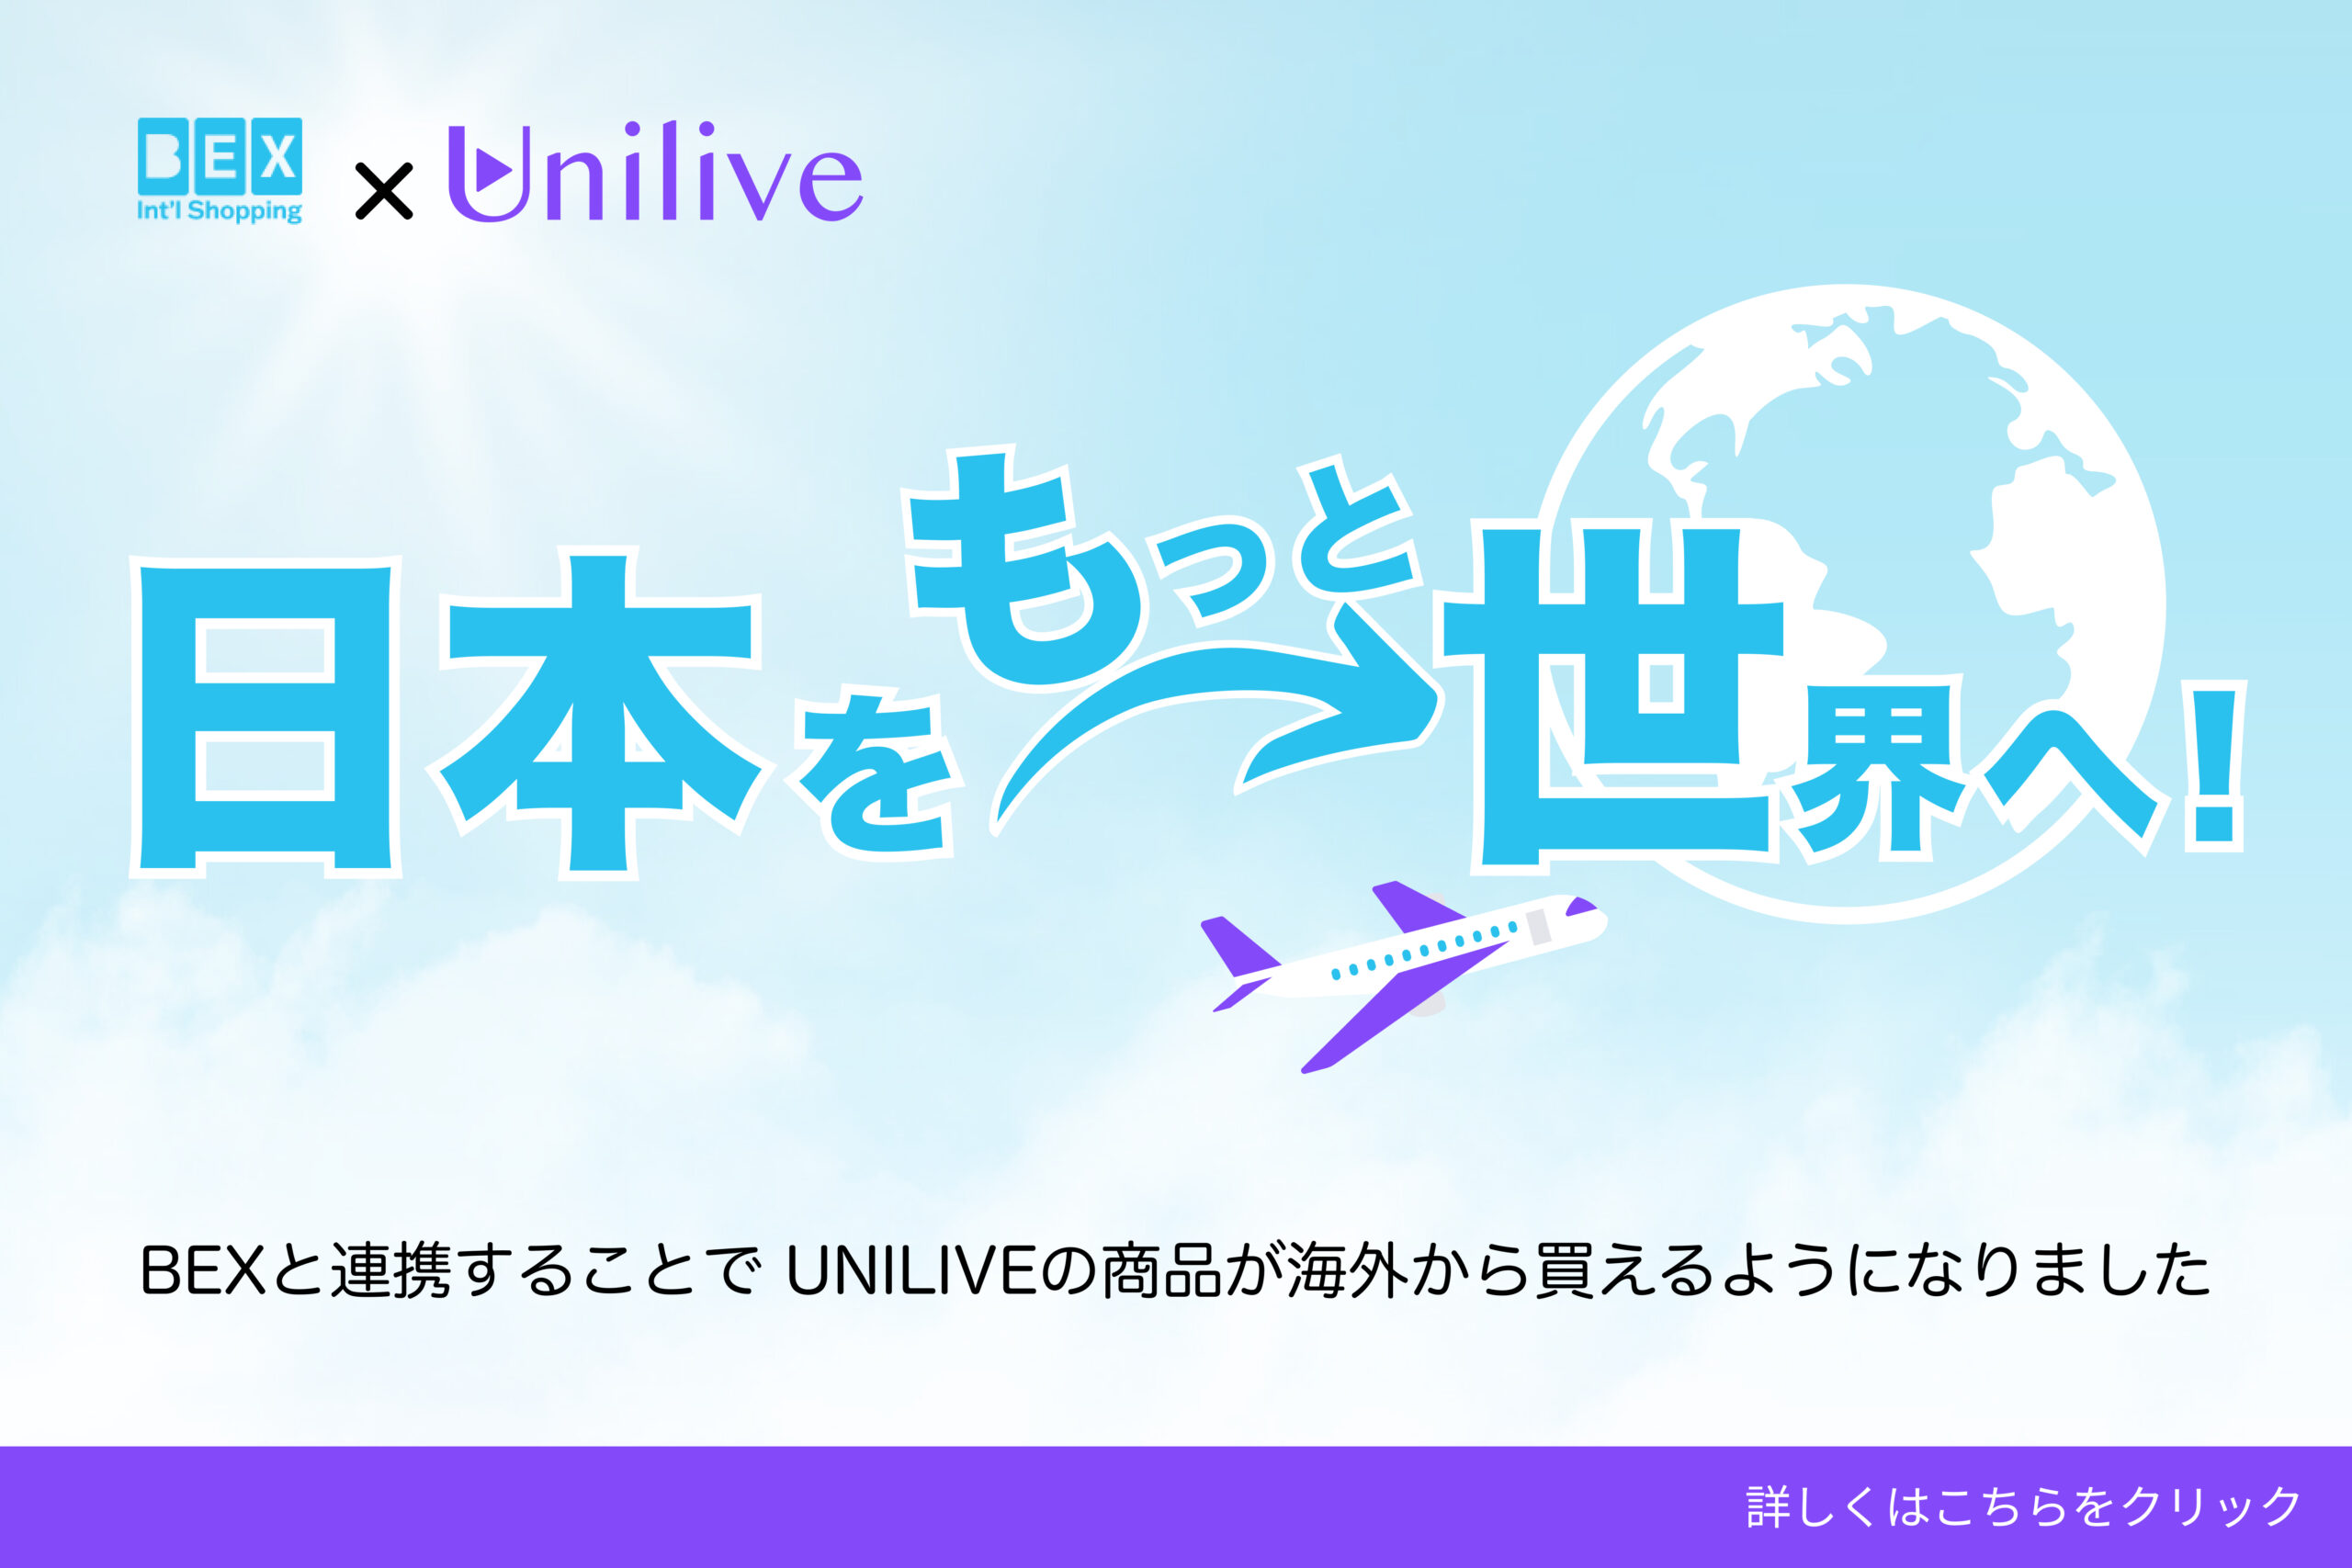 日本初のライブコマース総合プラットホーム「UNILIVE」を提供するYouTeacher株式会社と業務提携を開始しました。